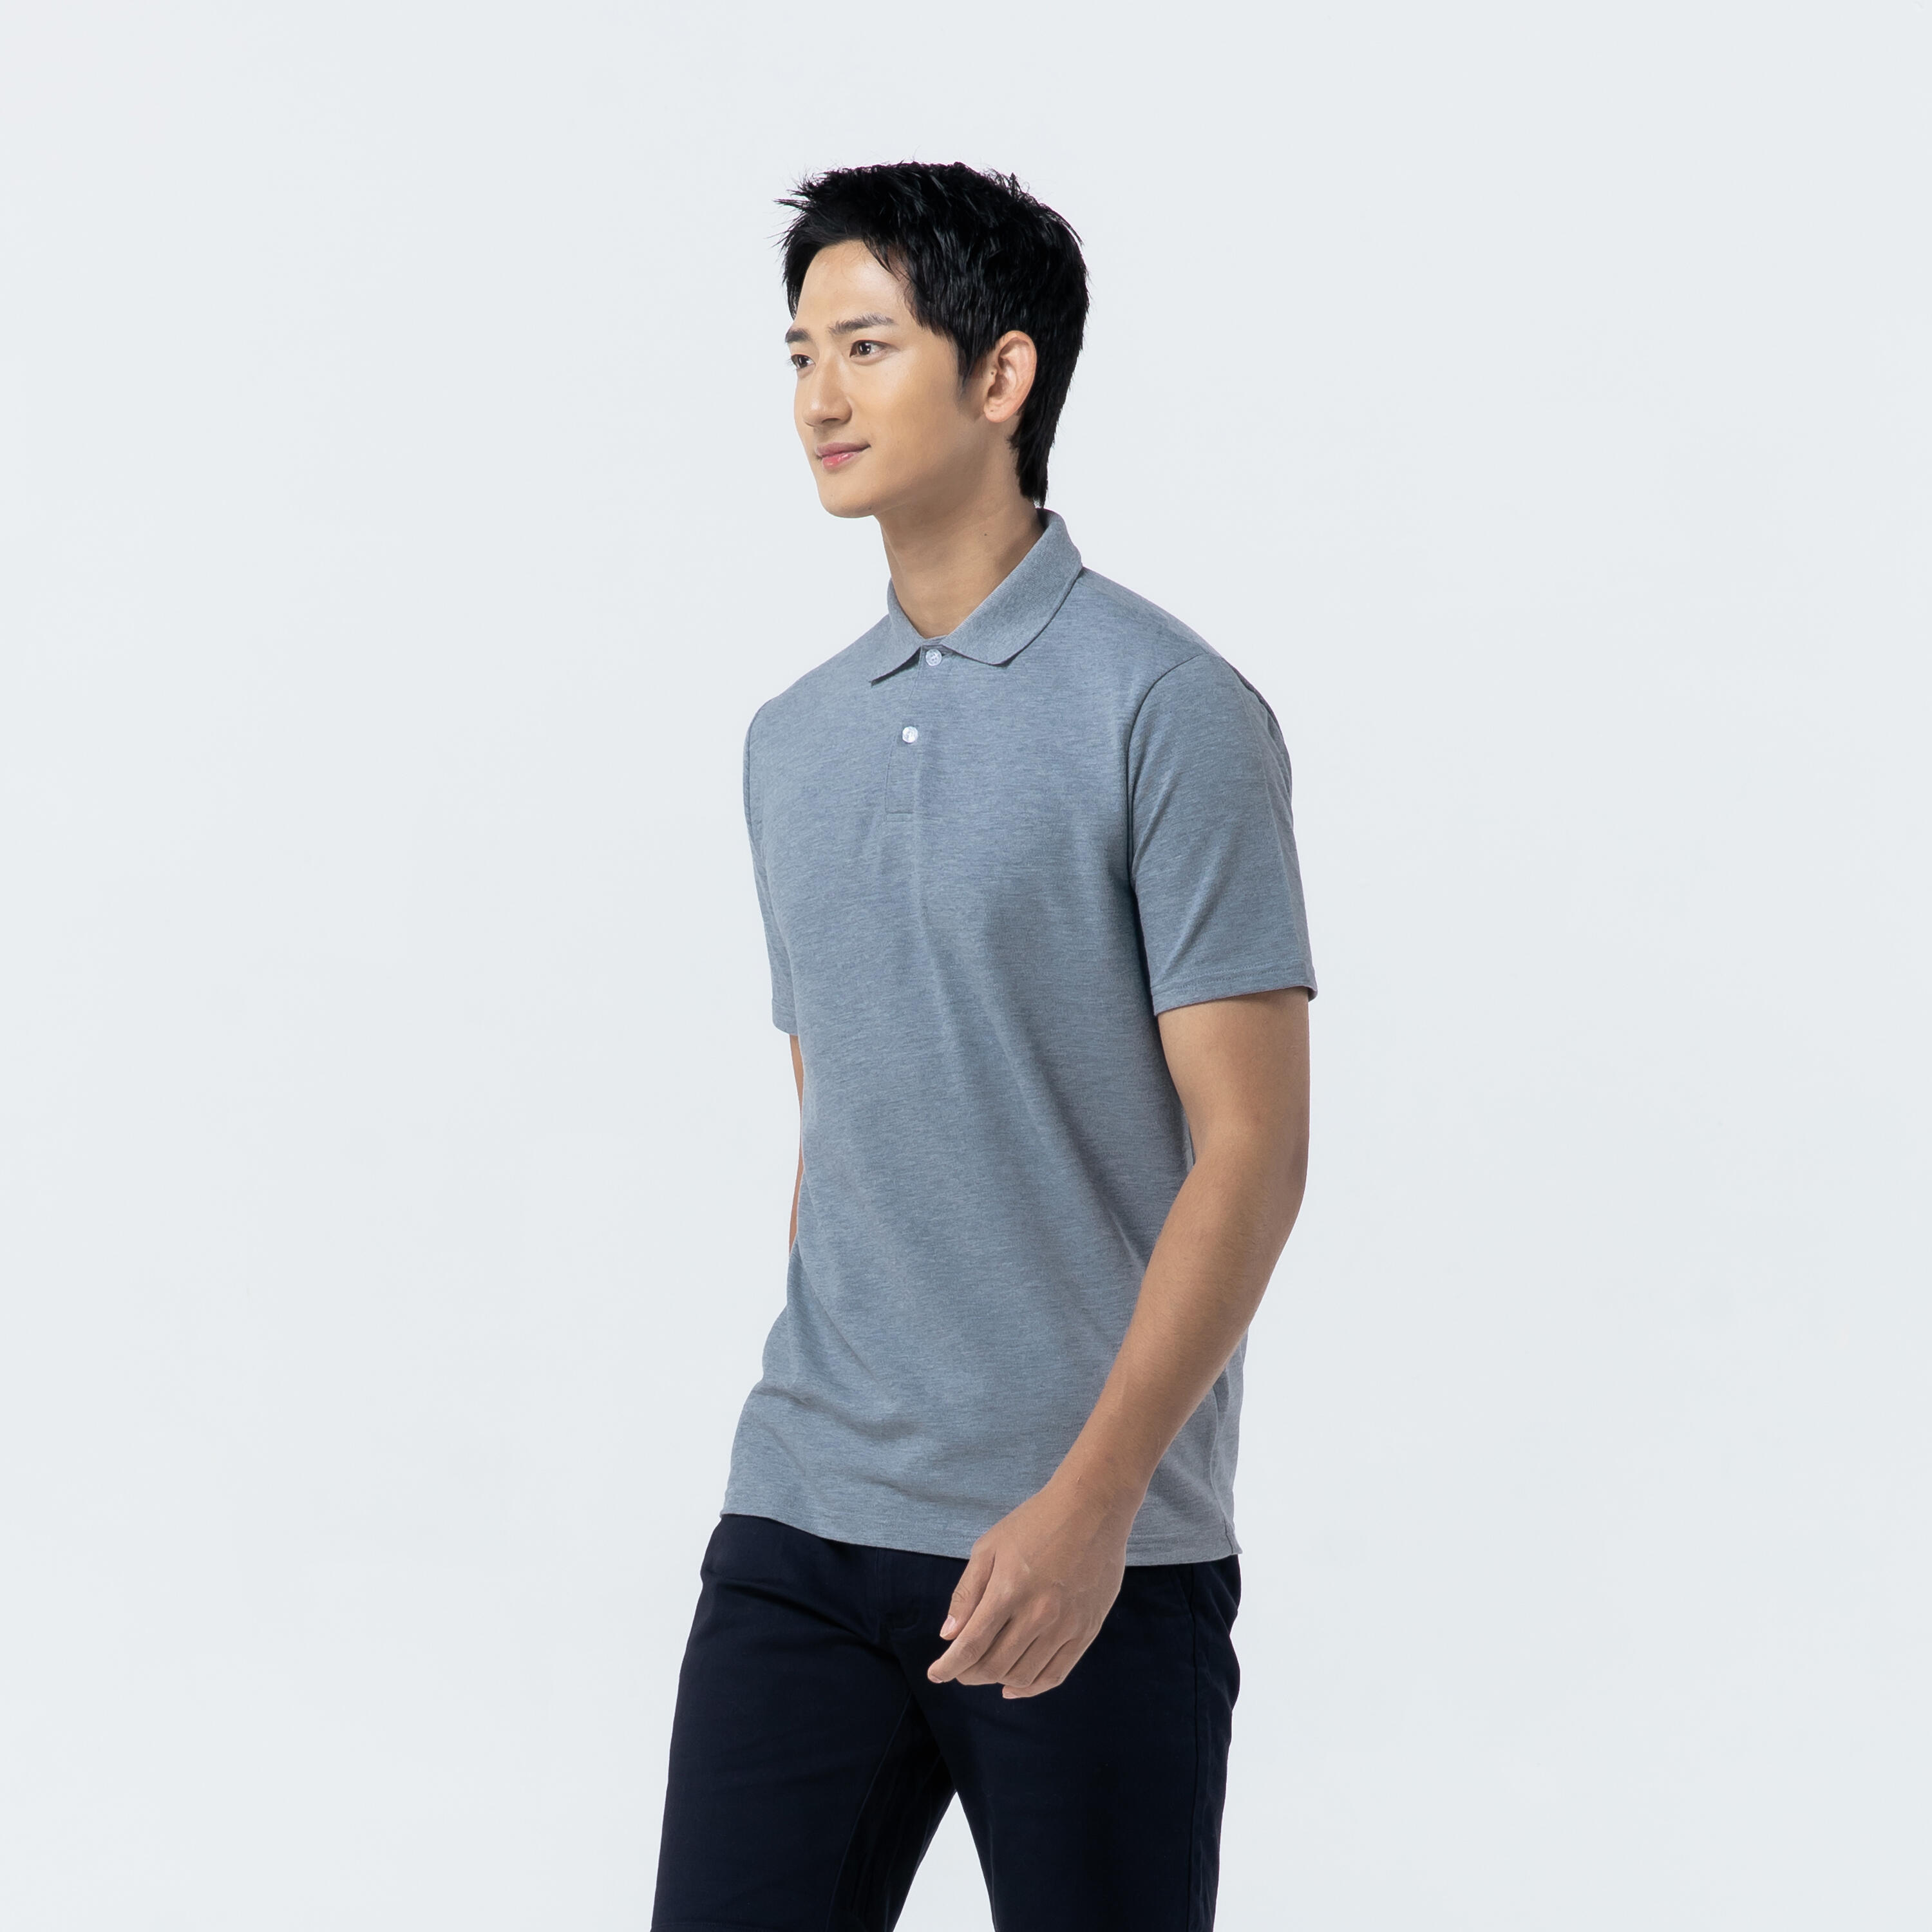 Men's golf short-sleeved polo shirt MW500 mottled grey 10/39